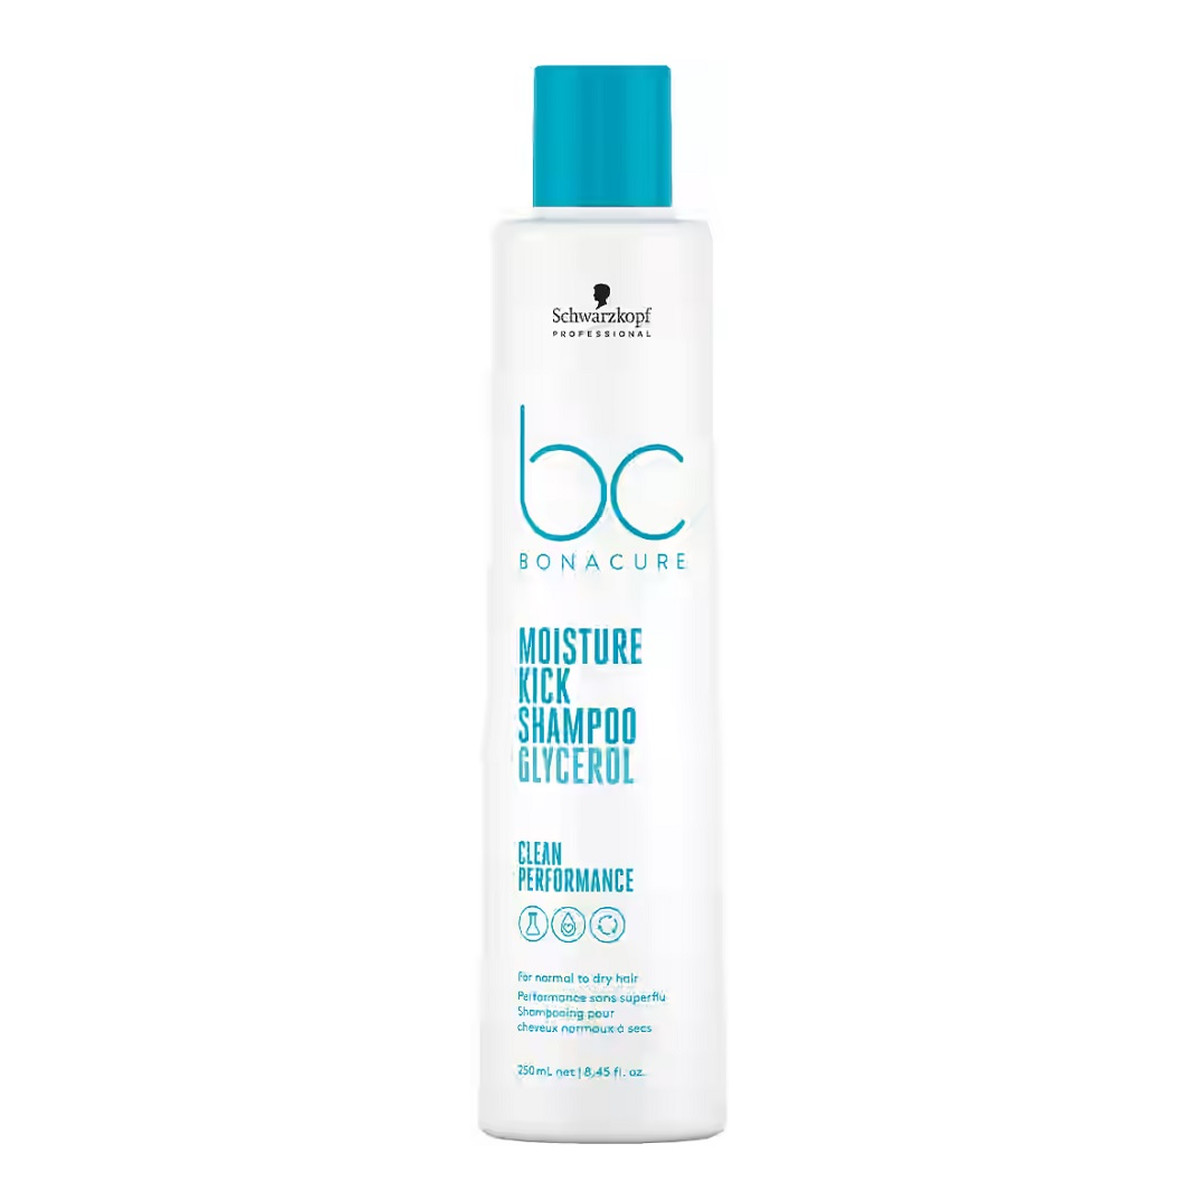 Schwarzkopf Bc bonacure moisture kick shampoo nawilżający szampon do włosów normalnych i suchych 250ml